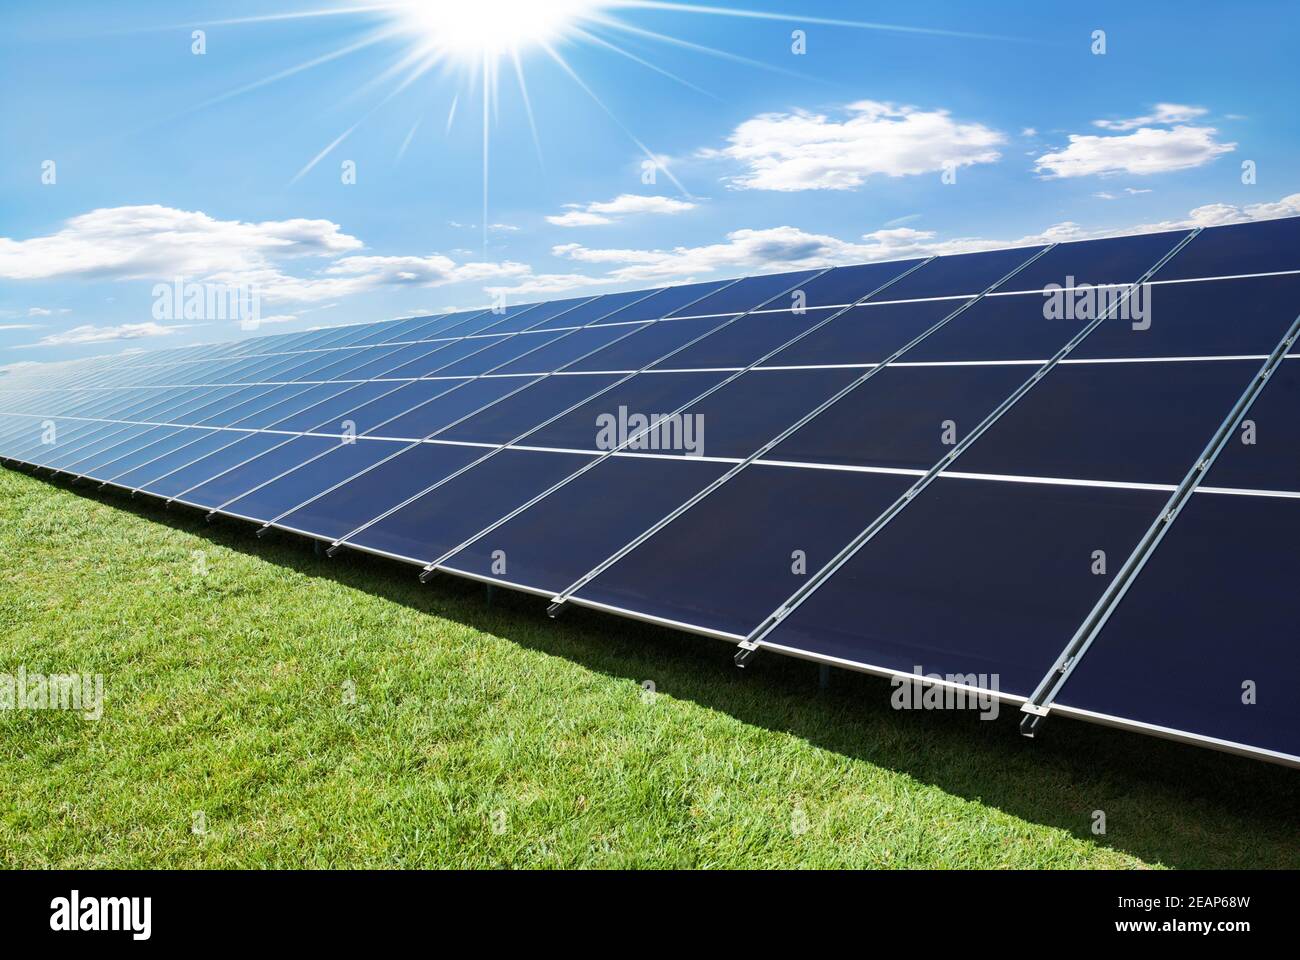 solar panels row Stock Photo